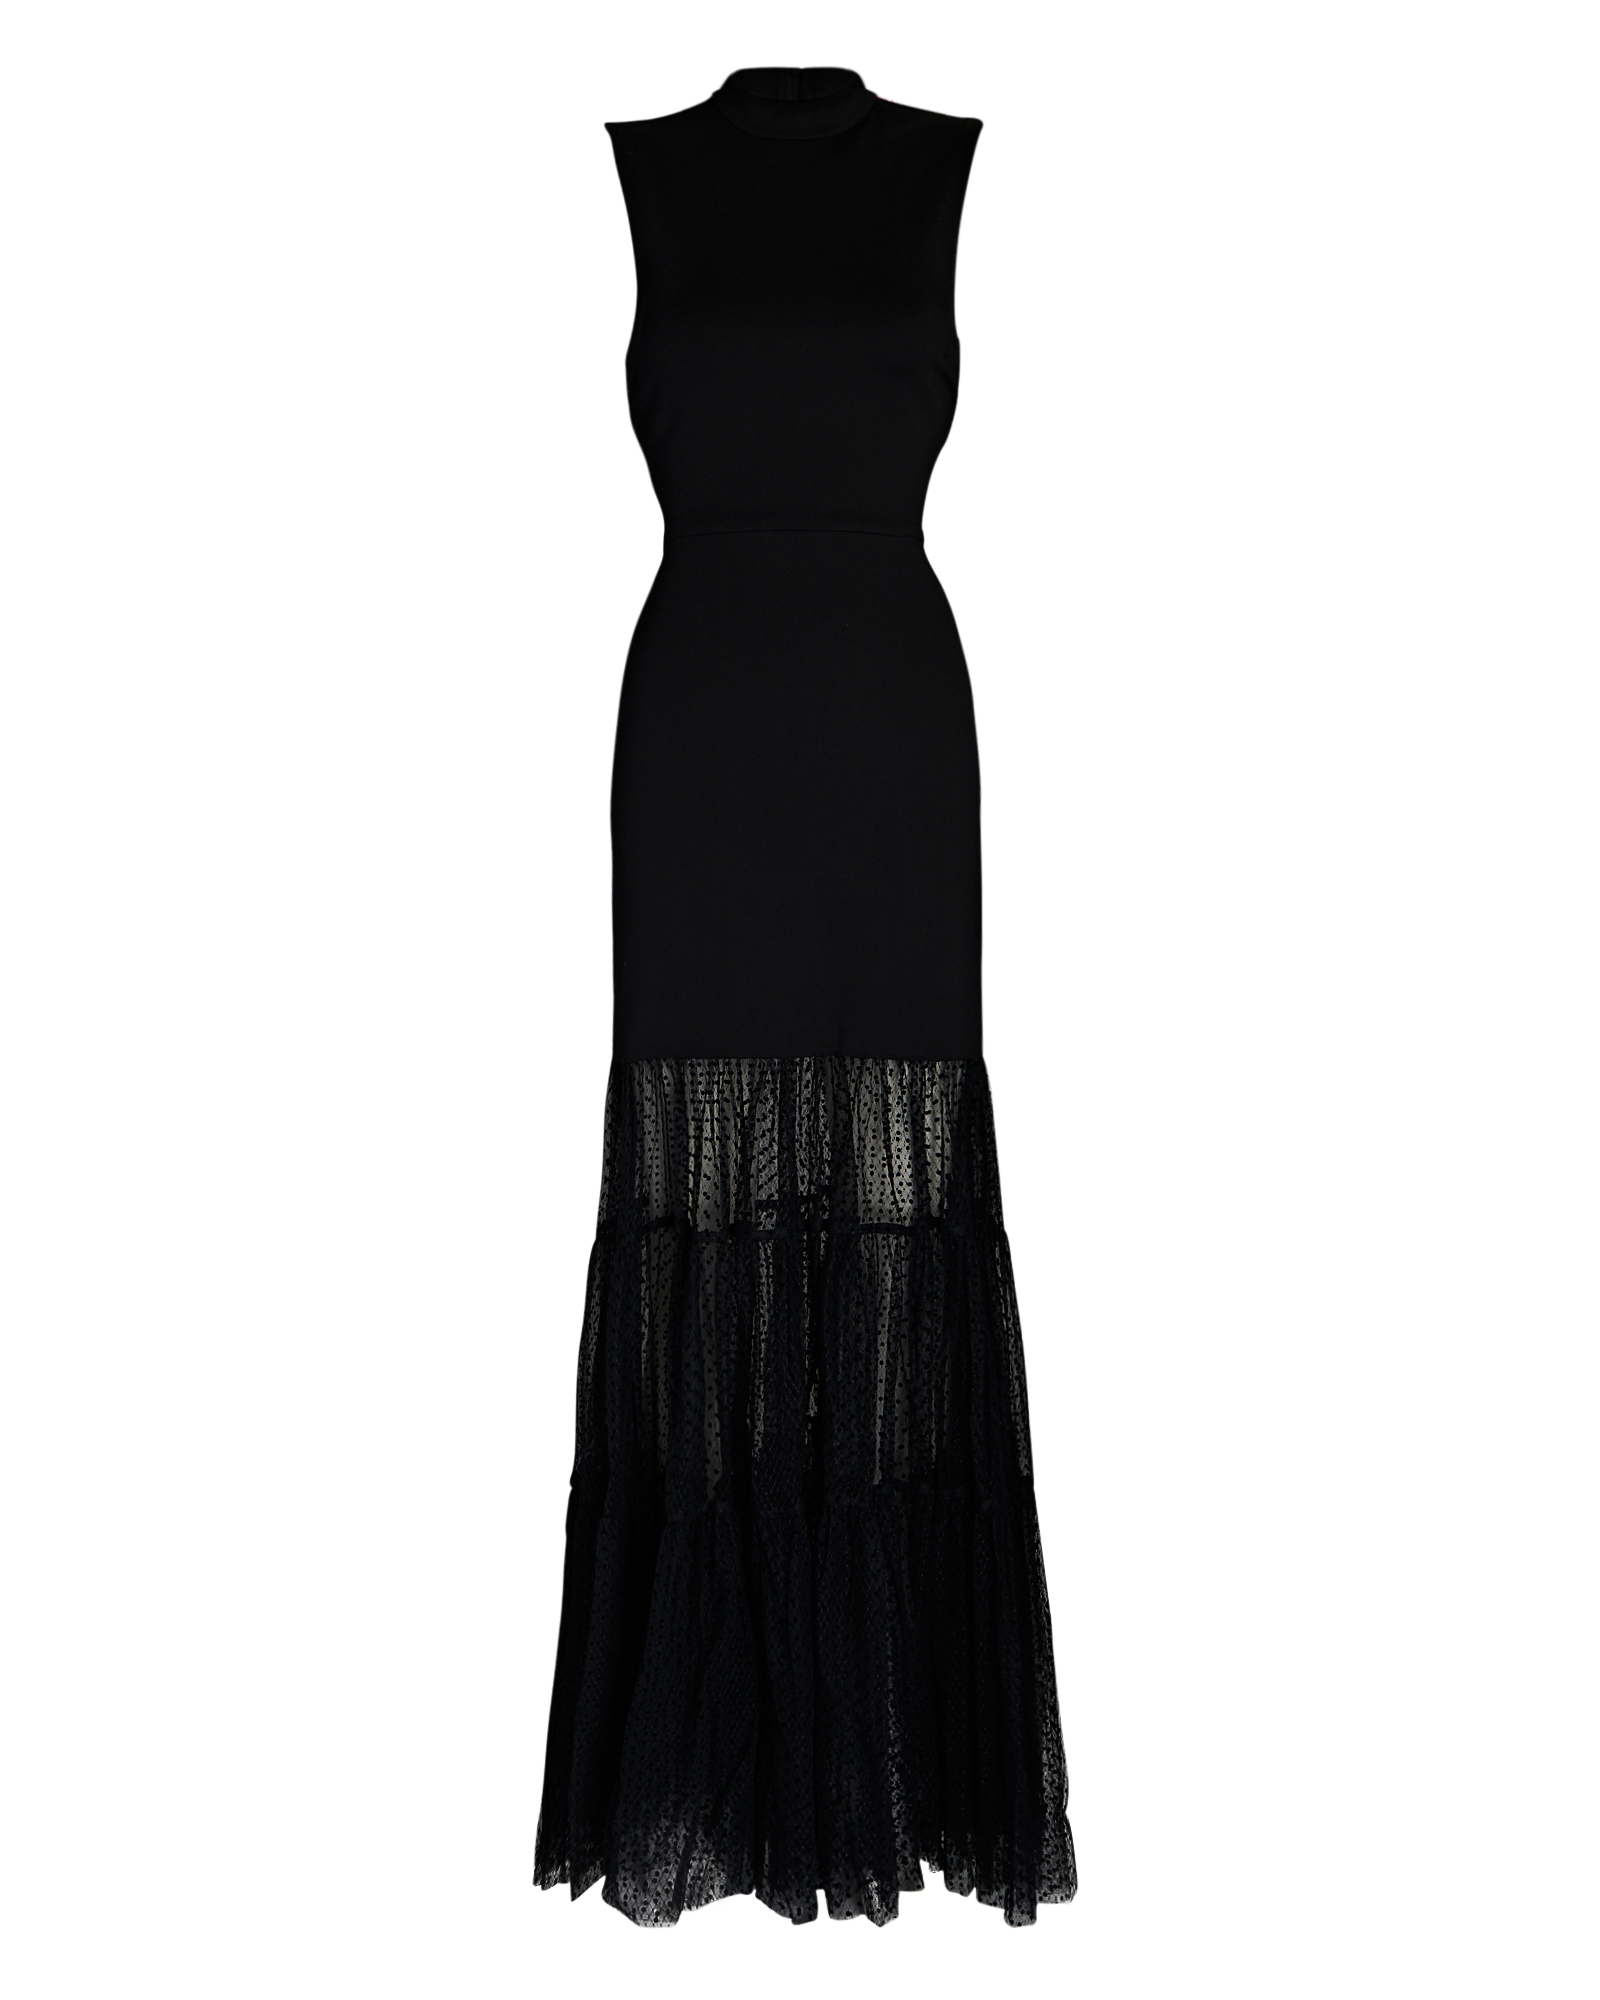 STAUD Daffodil Maxi Dress In Black | INTERMIX®